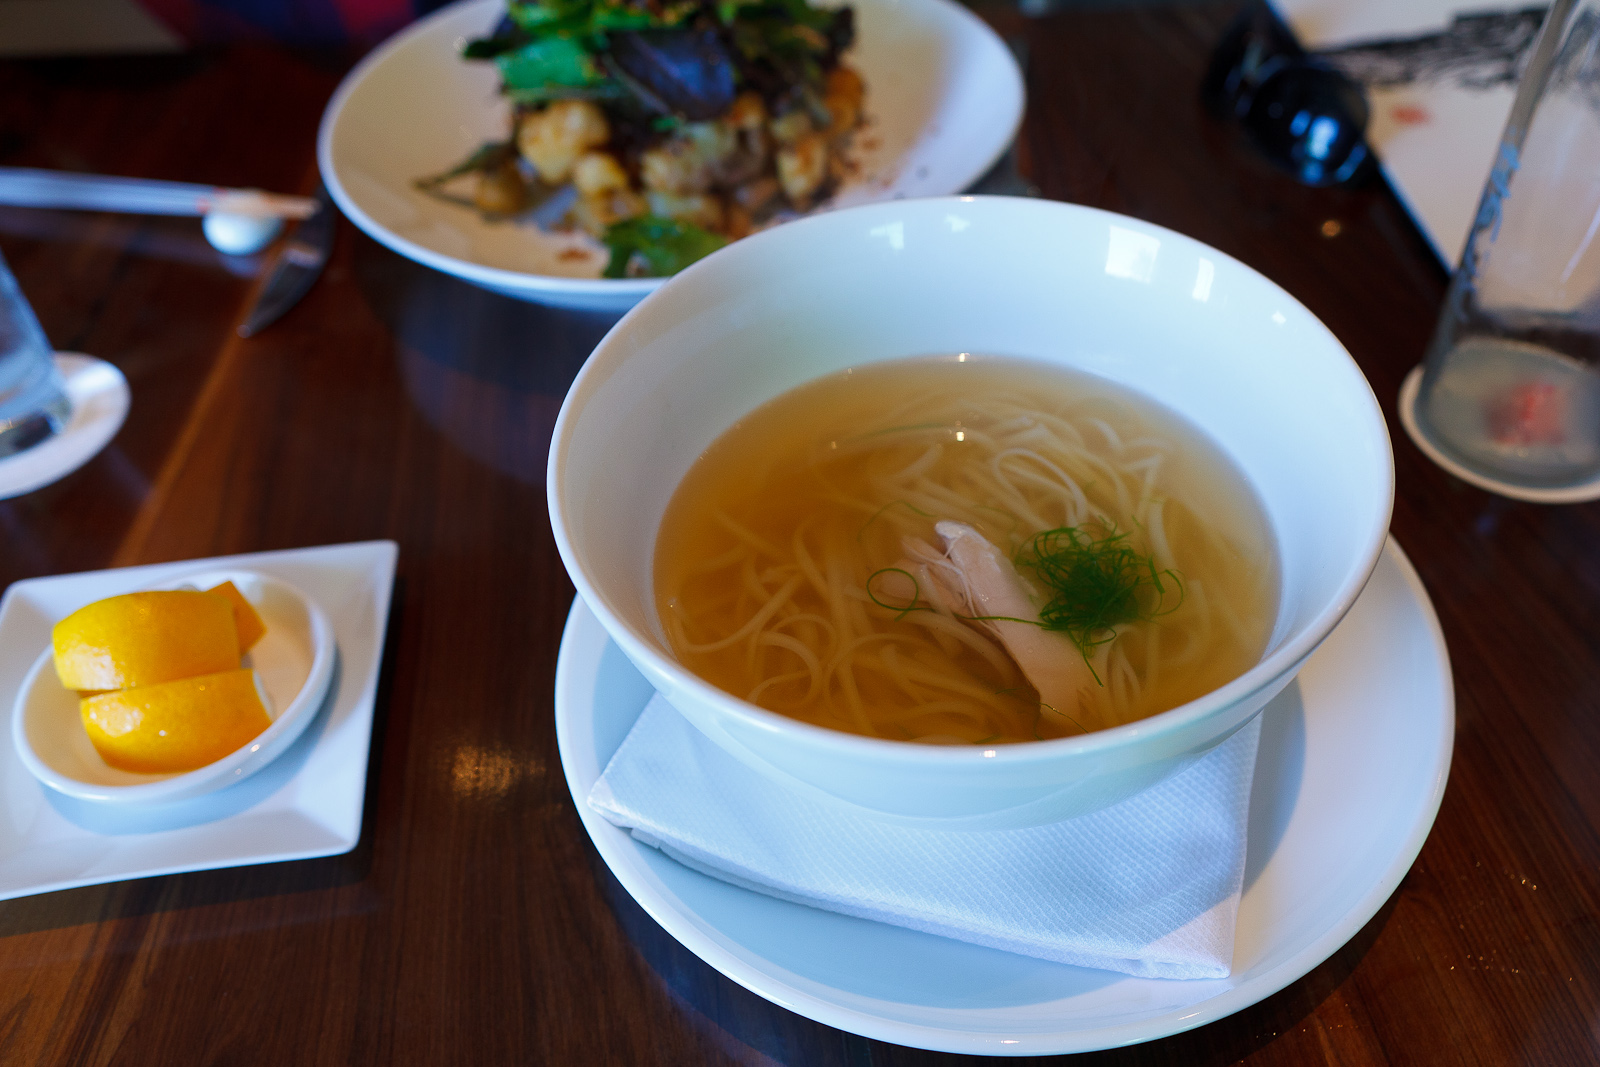 Ramen soup - morimoto chicken noodle soup ($14)